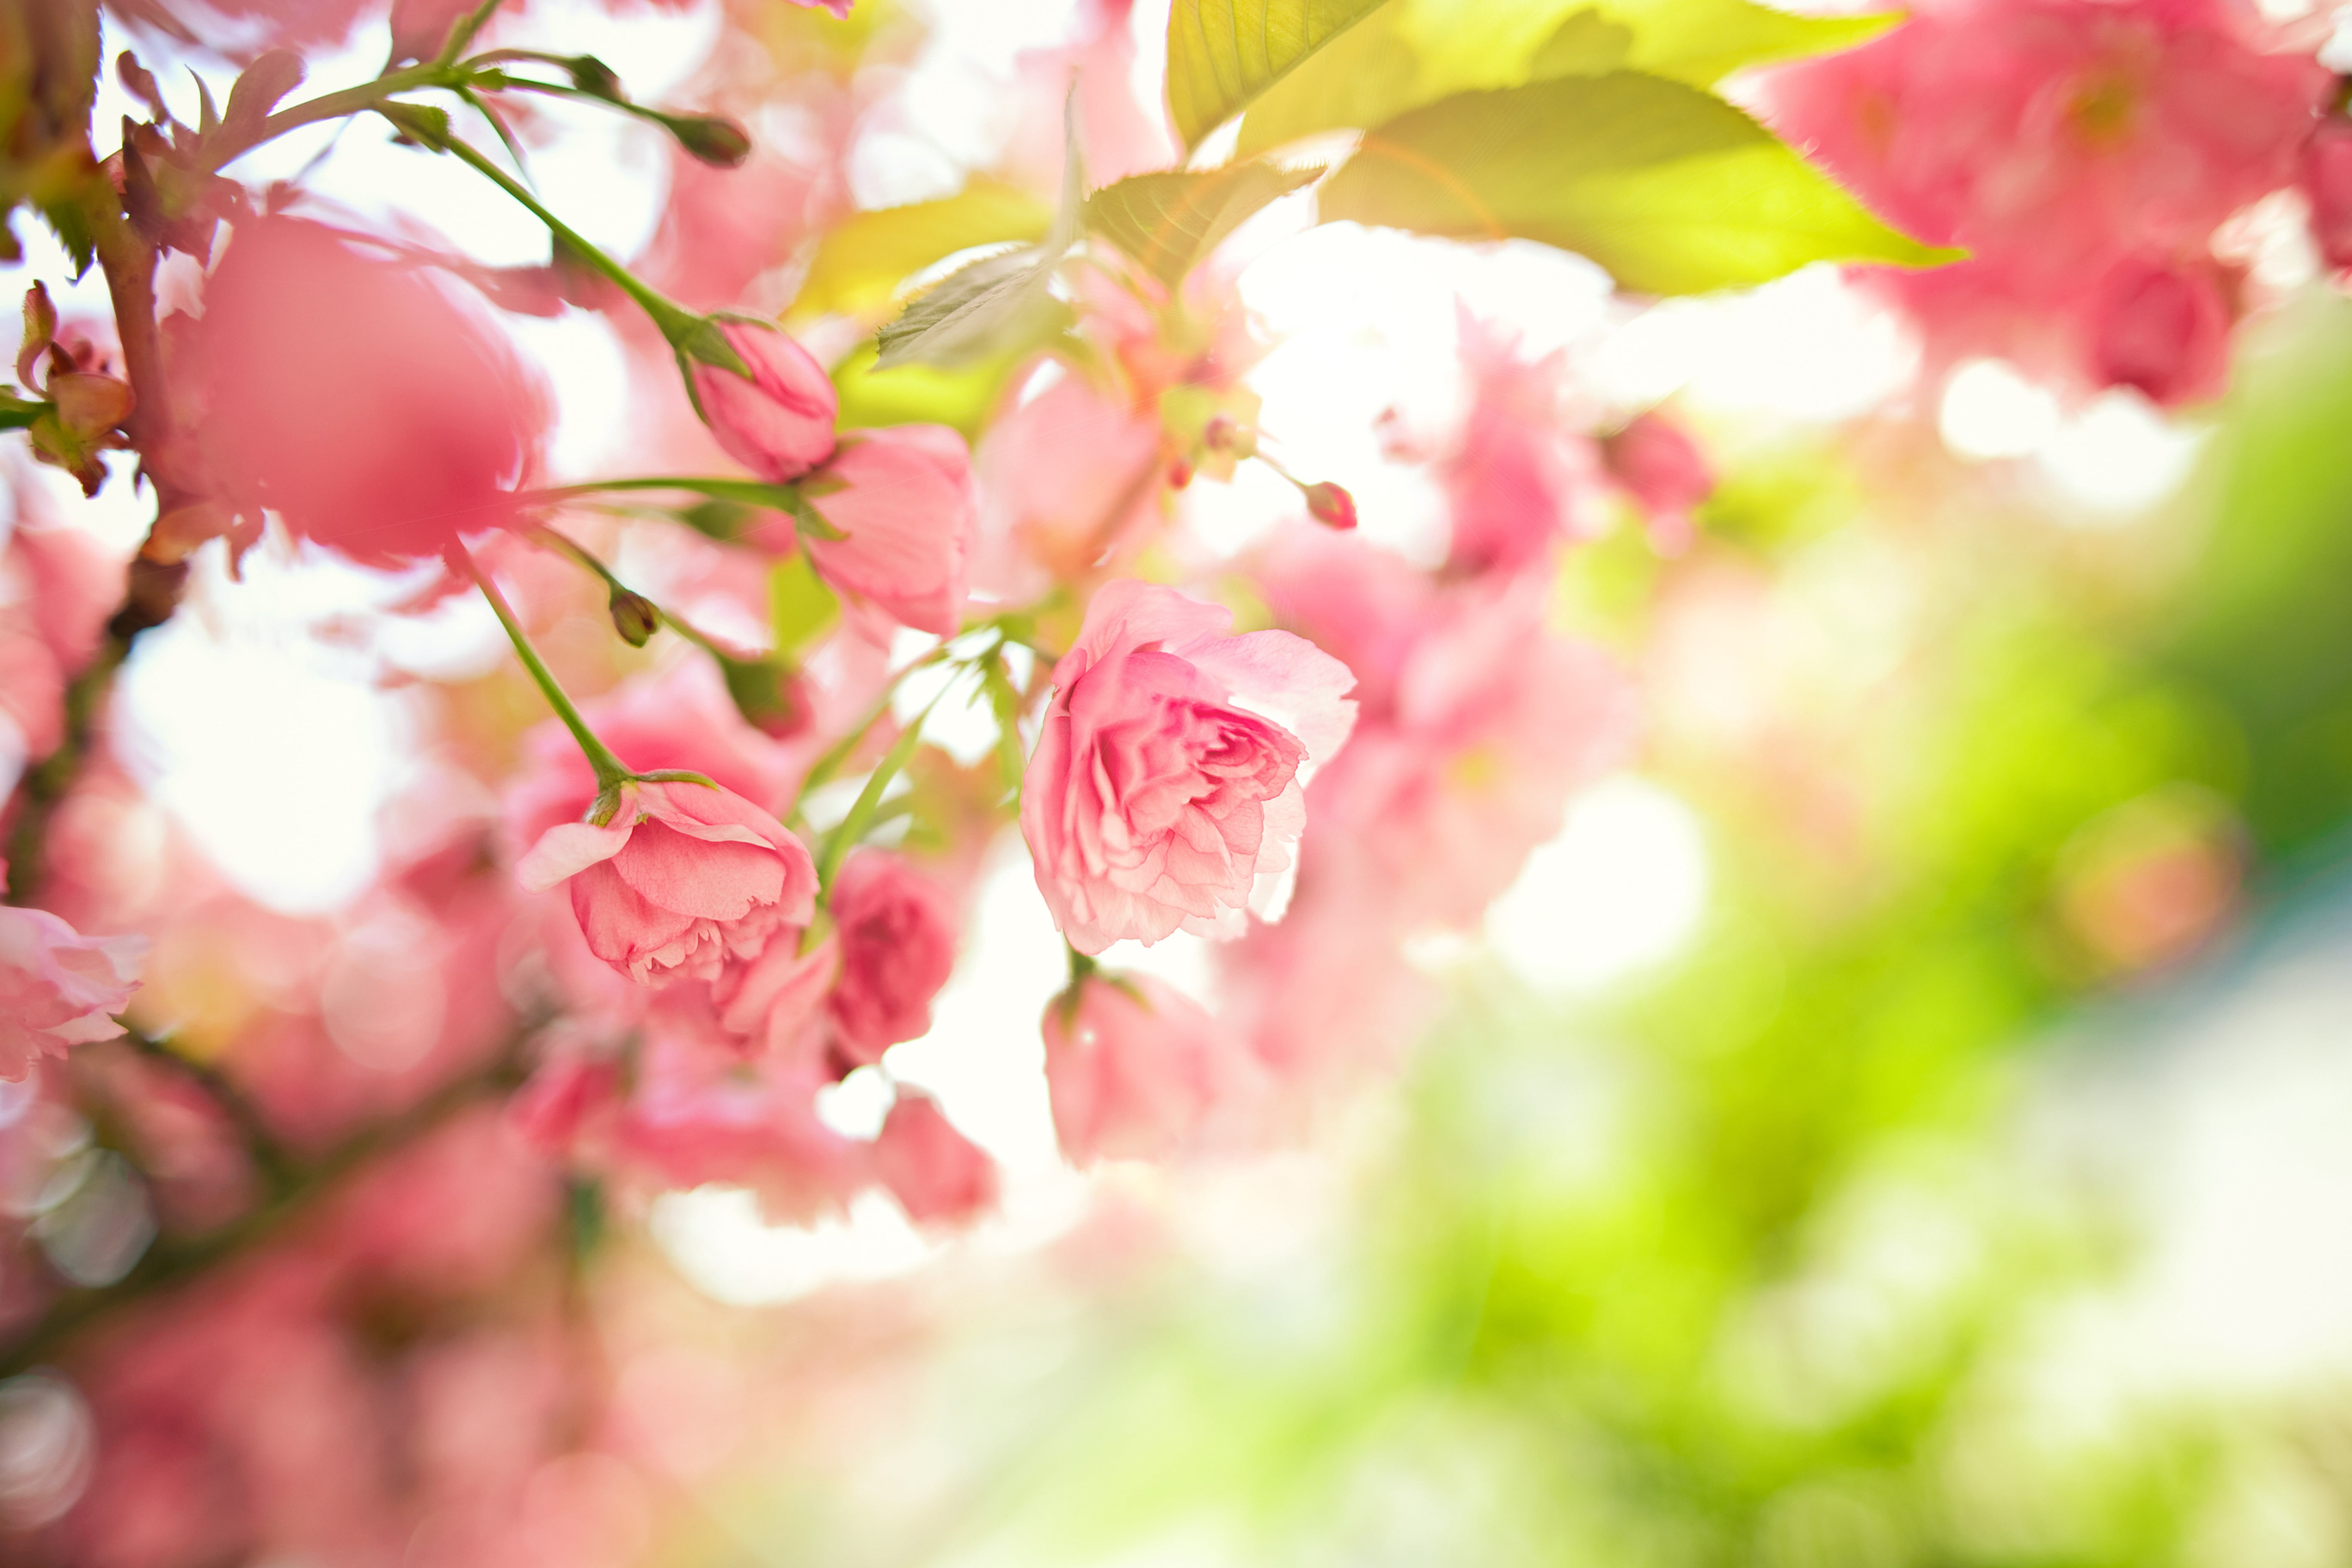 Обои на айфон март. Весенние цветы. Весенний фон. Цветочный фон. Розовые цветы.